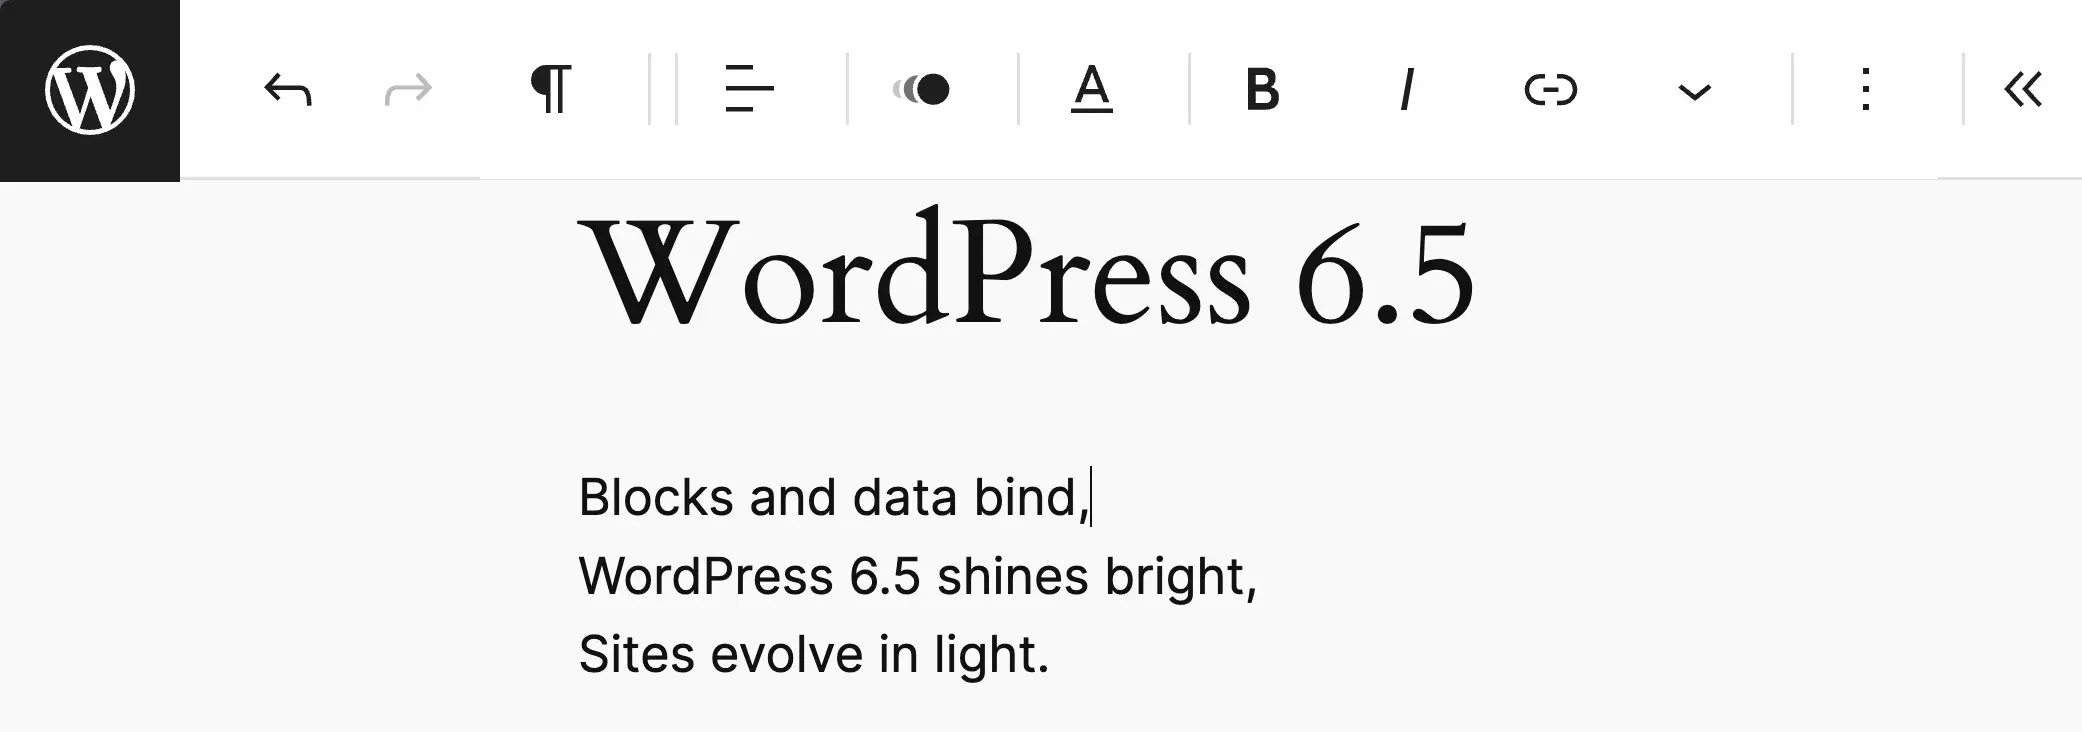 Le mode sans distraction de WordPress 6.5 est activé, démontrant la barre d'outils supérieure.